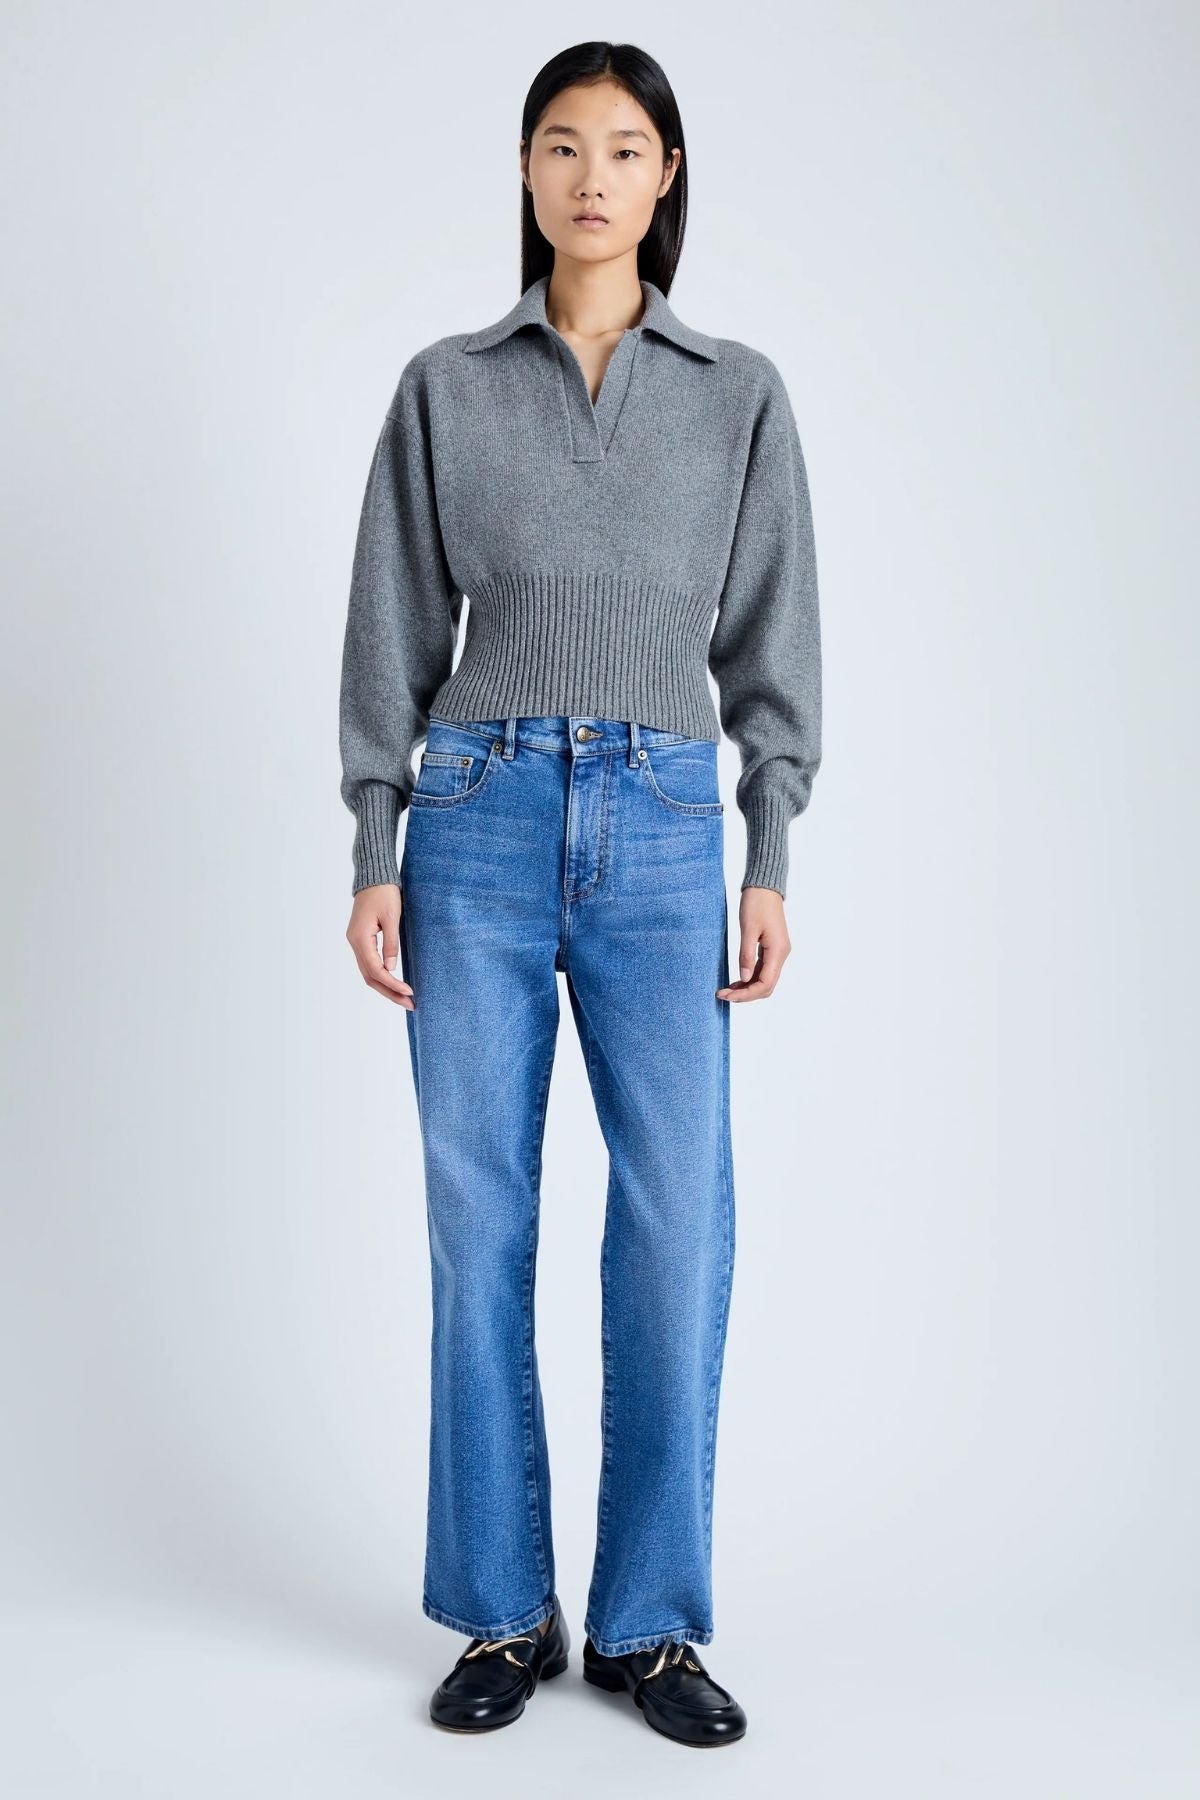 Proenza Schouler Jeanne Cashmere Knit Sweater - Grey Melange